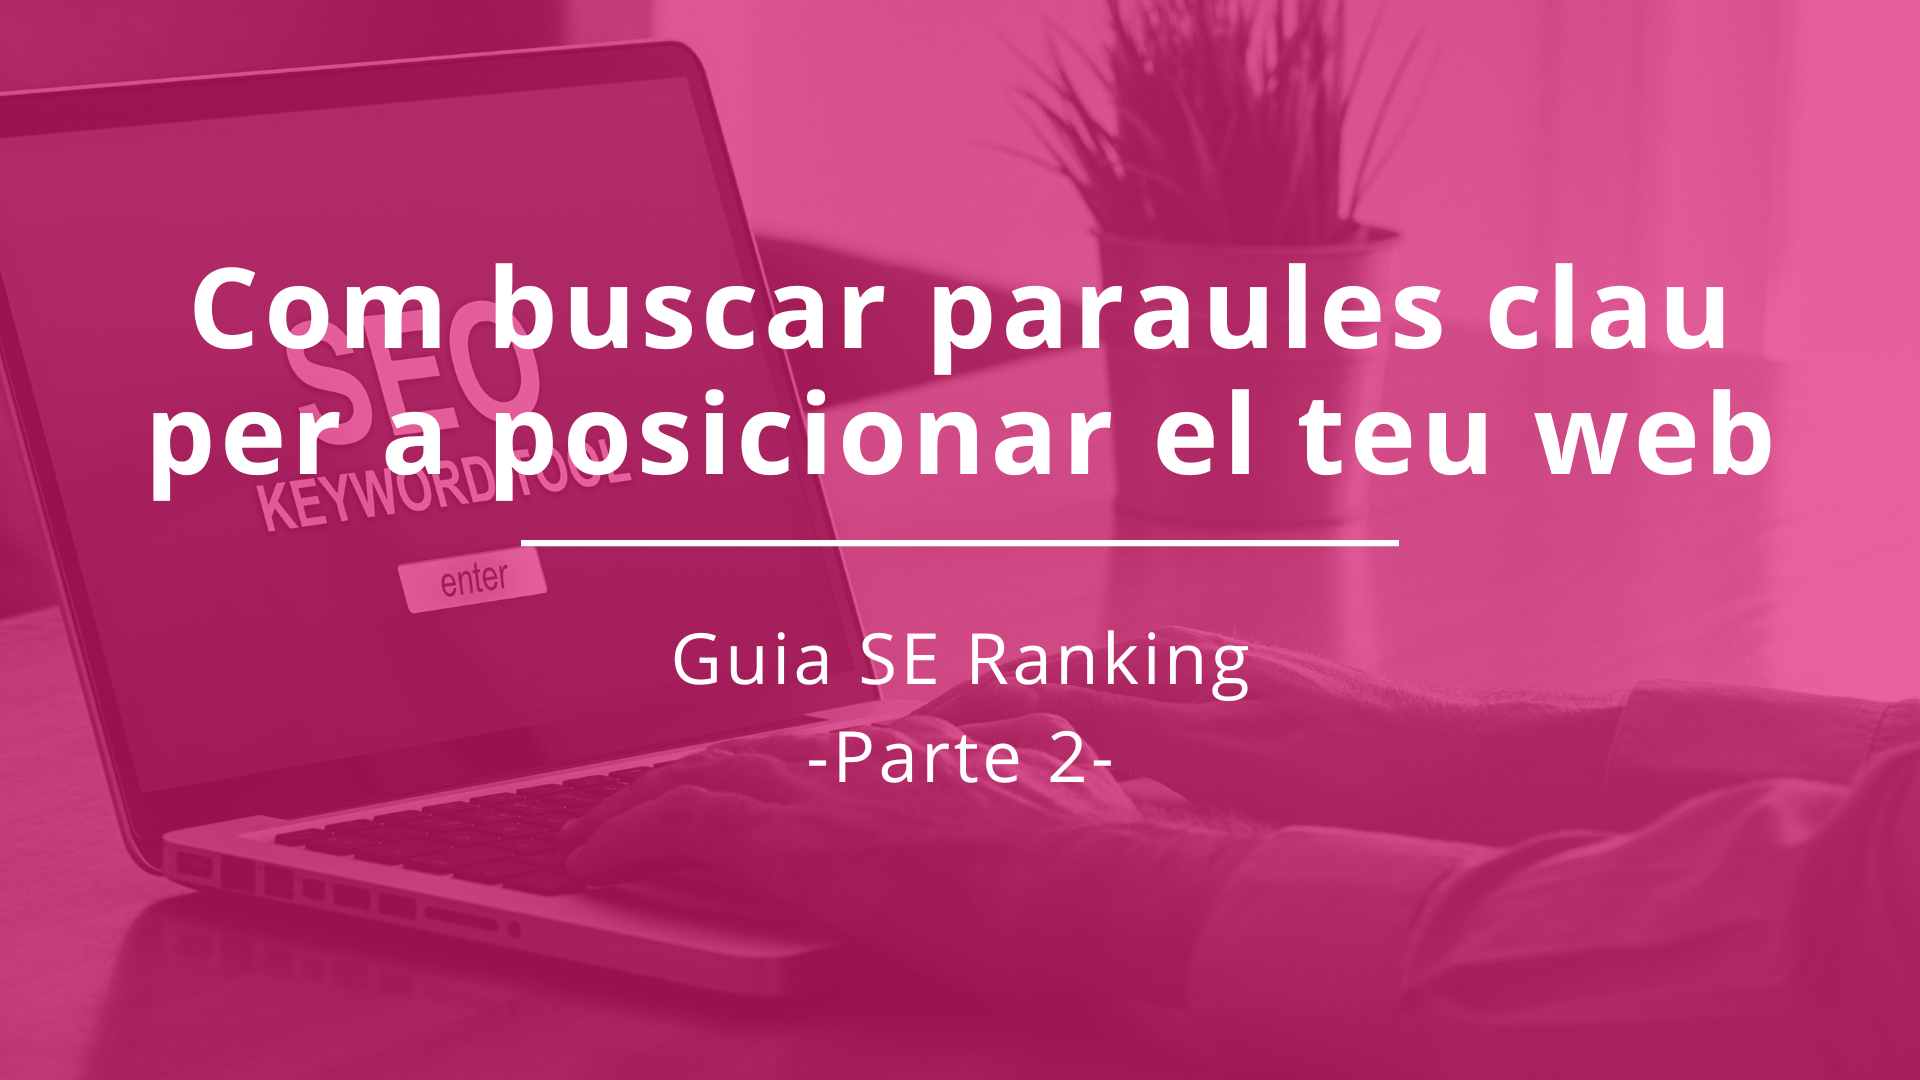 Cercar paraules claus per SEO: Guia SE Ranking. Part 2